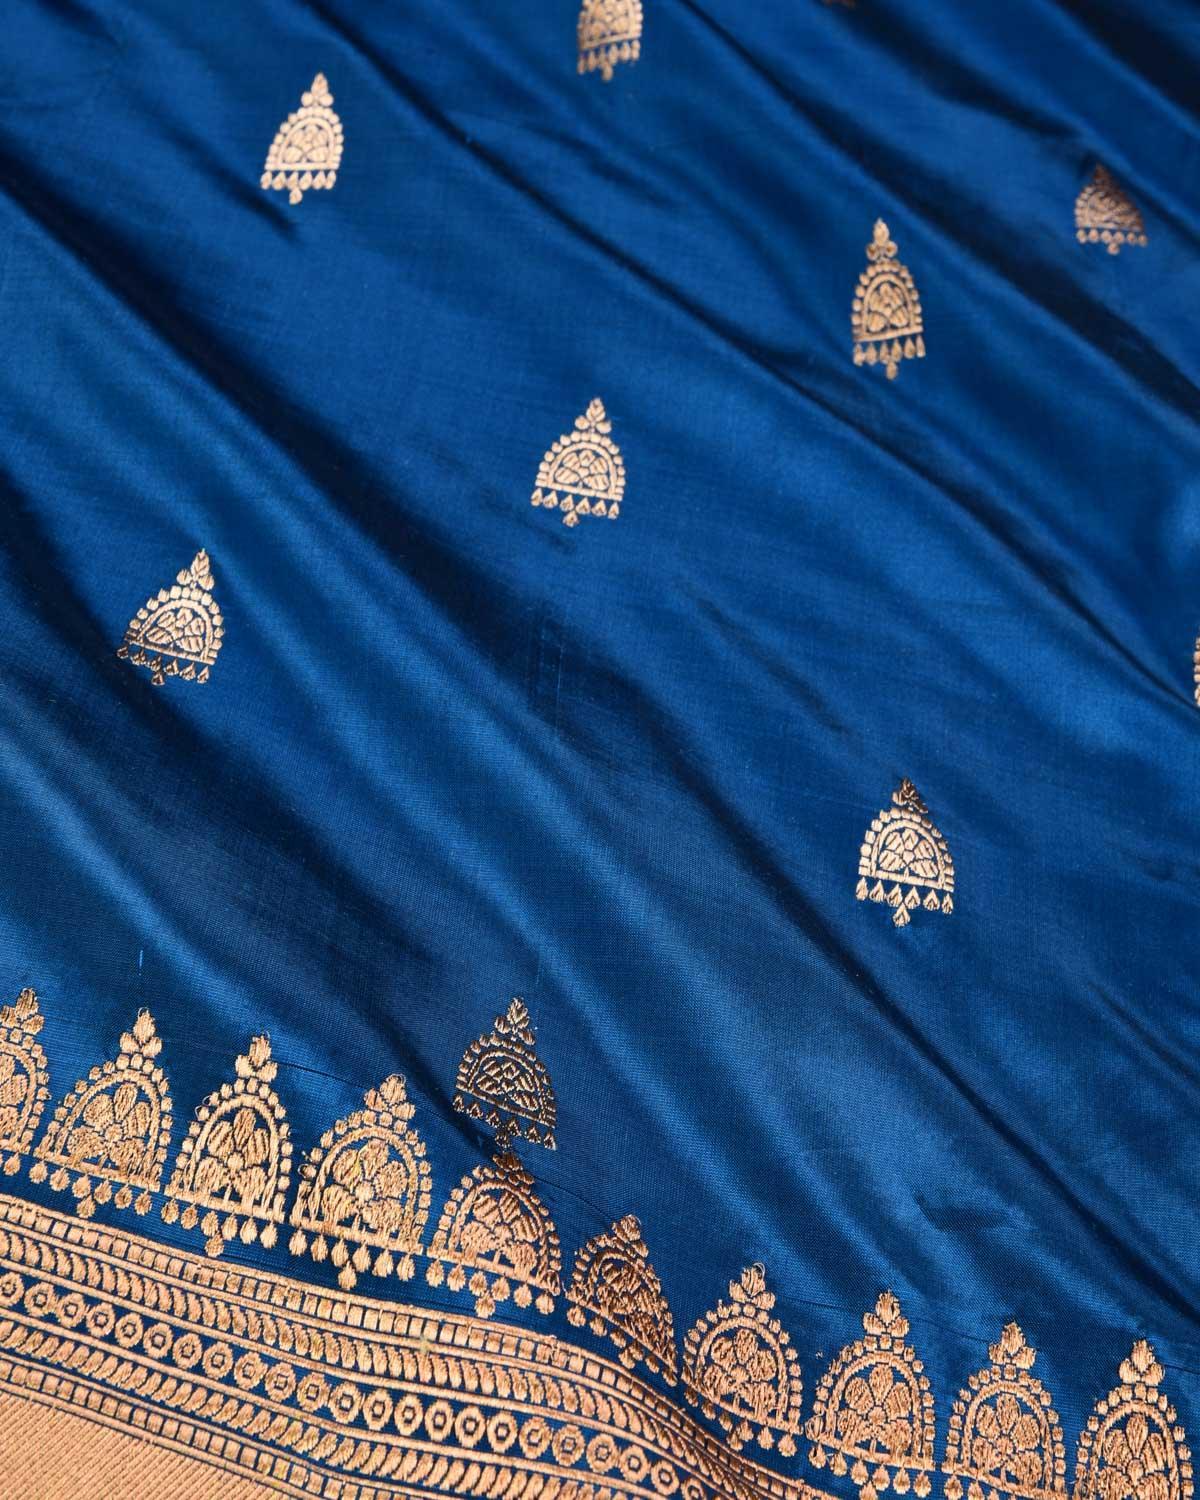 Blue Banarasi Gold Zari Buti Kadhuan Brocade Handwoven Katan Silk Saree - By HolyWeaves, Benares